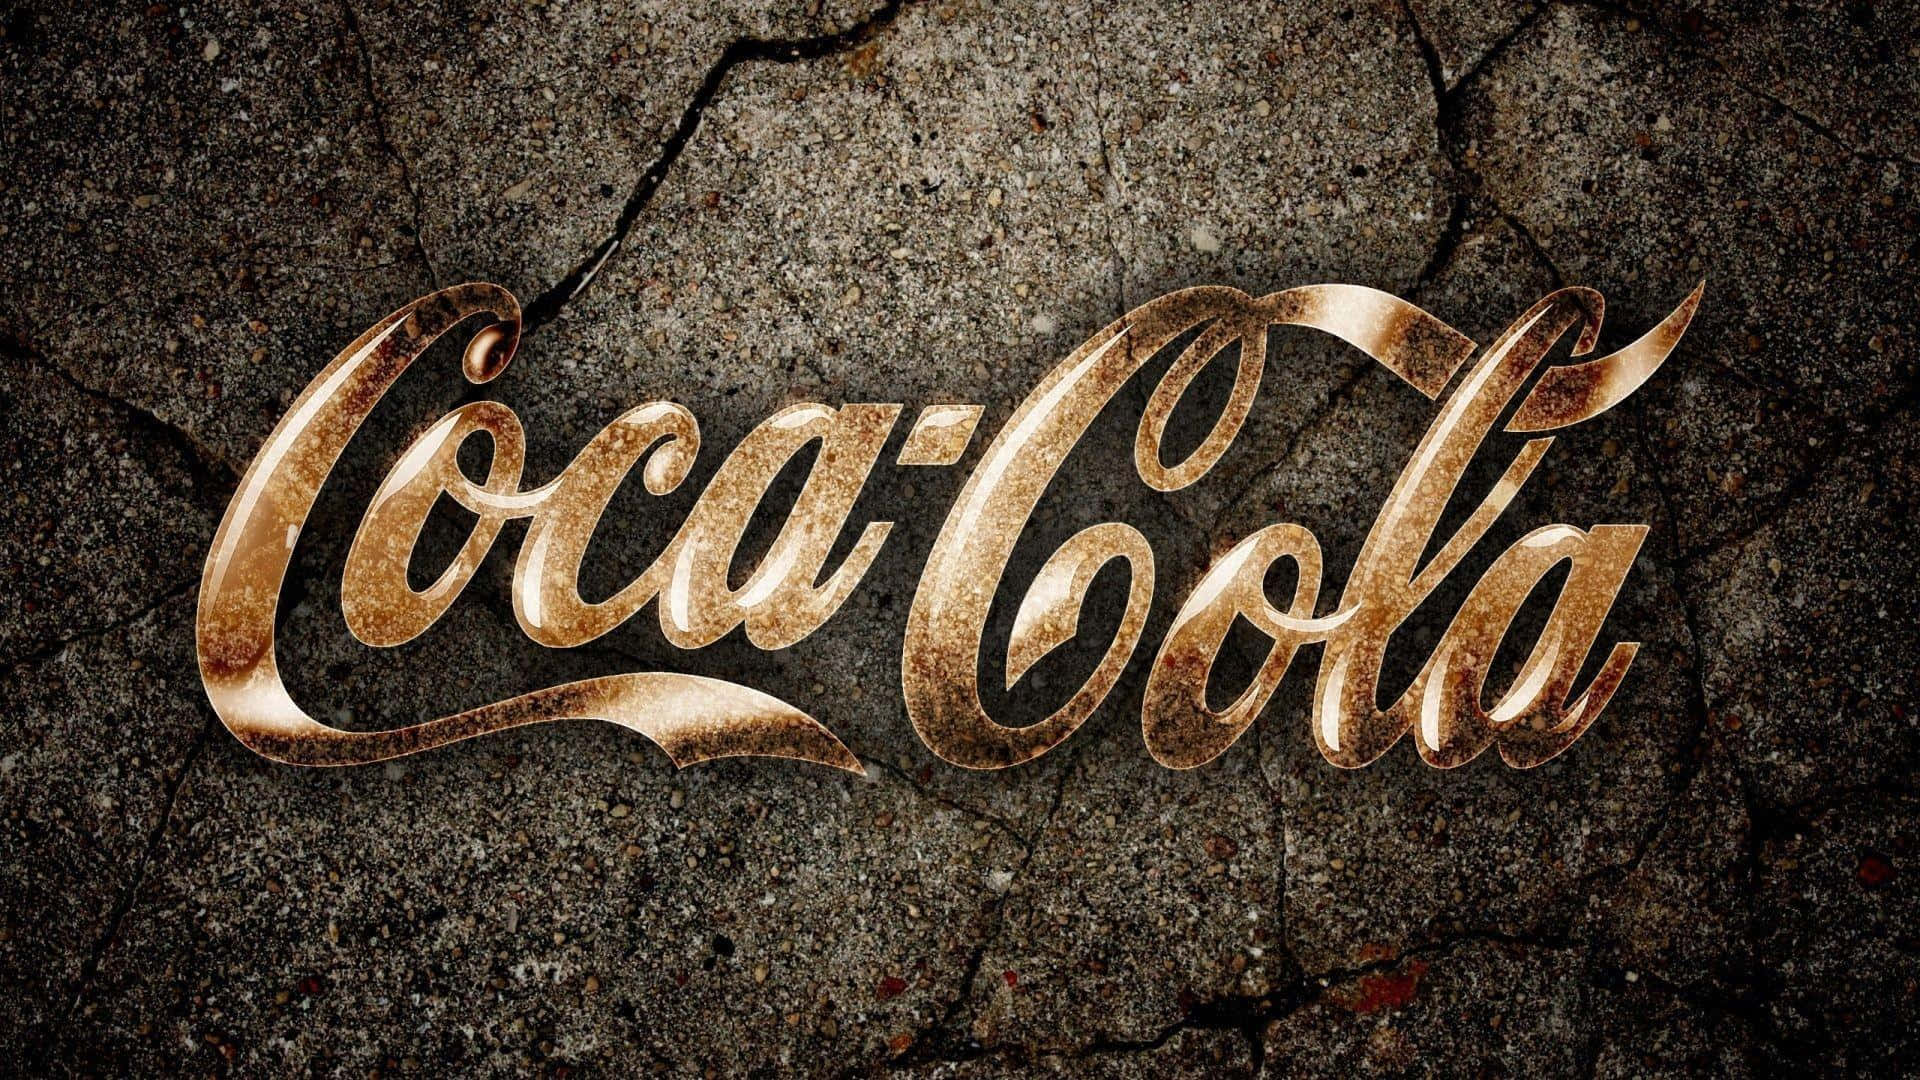 Enjoy the iconic taste of Coca-Cola!